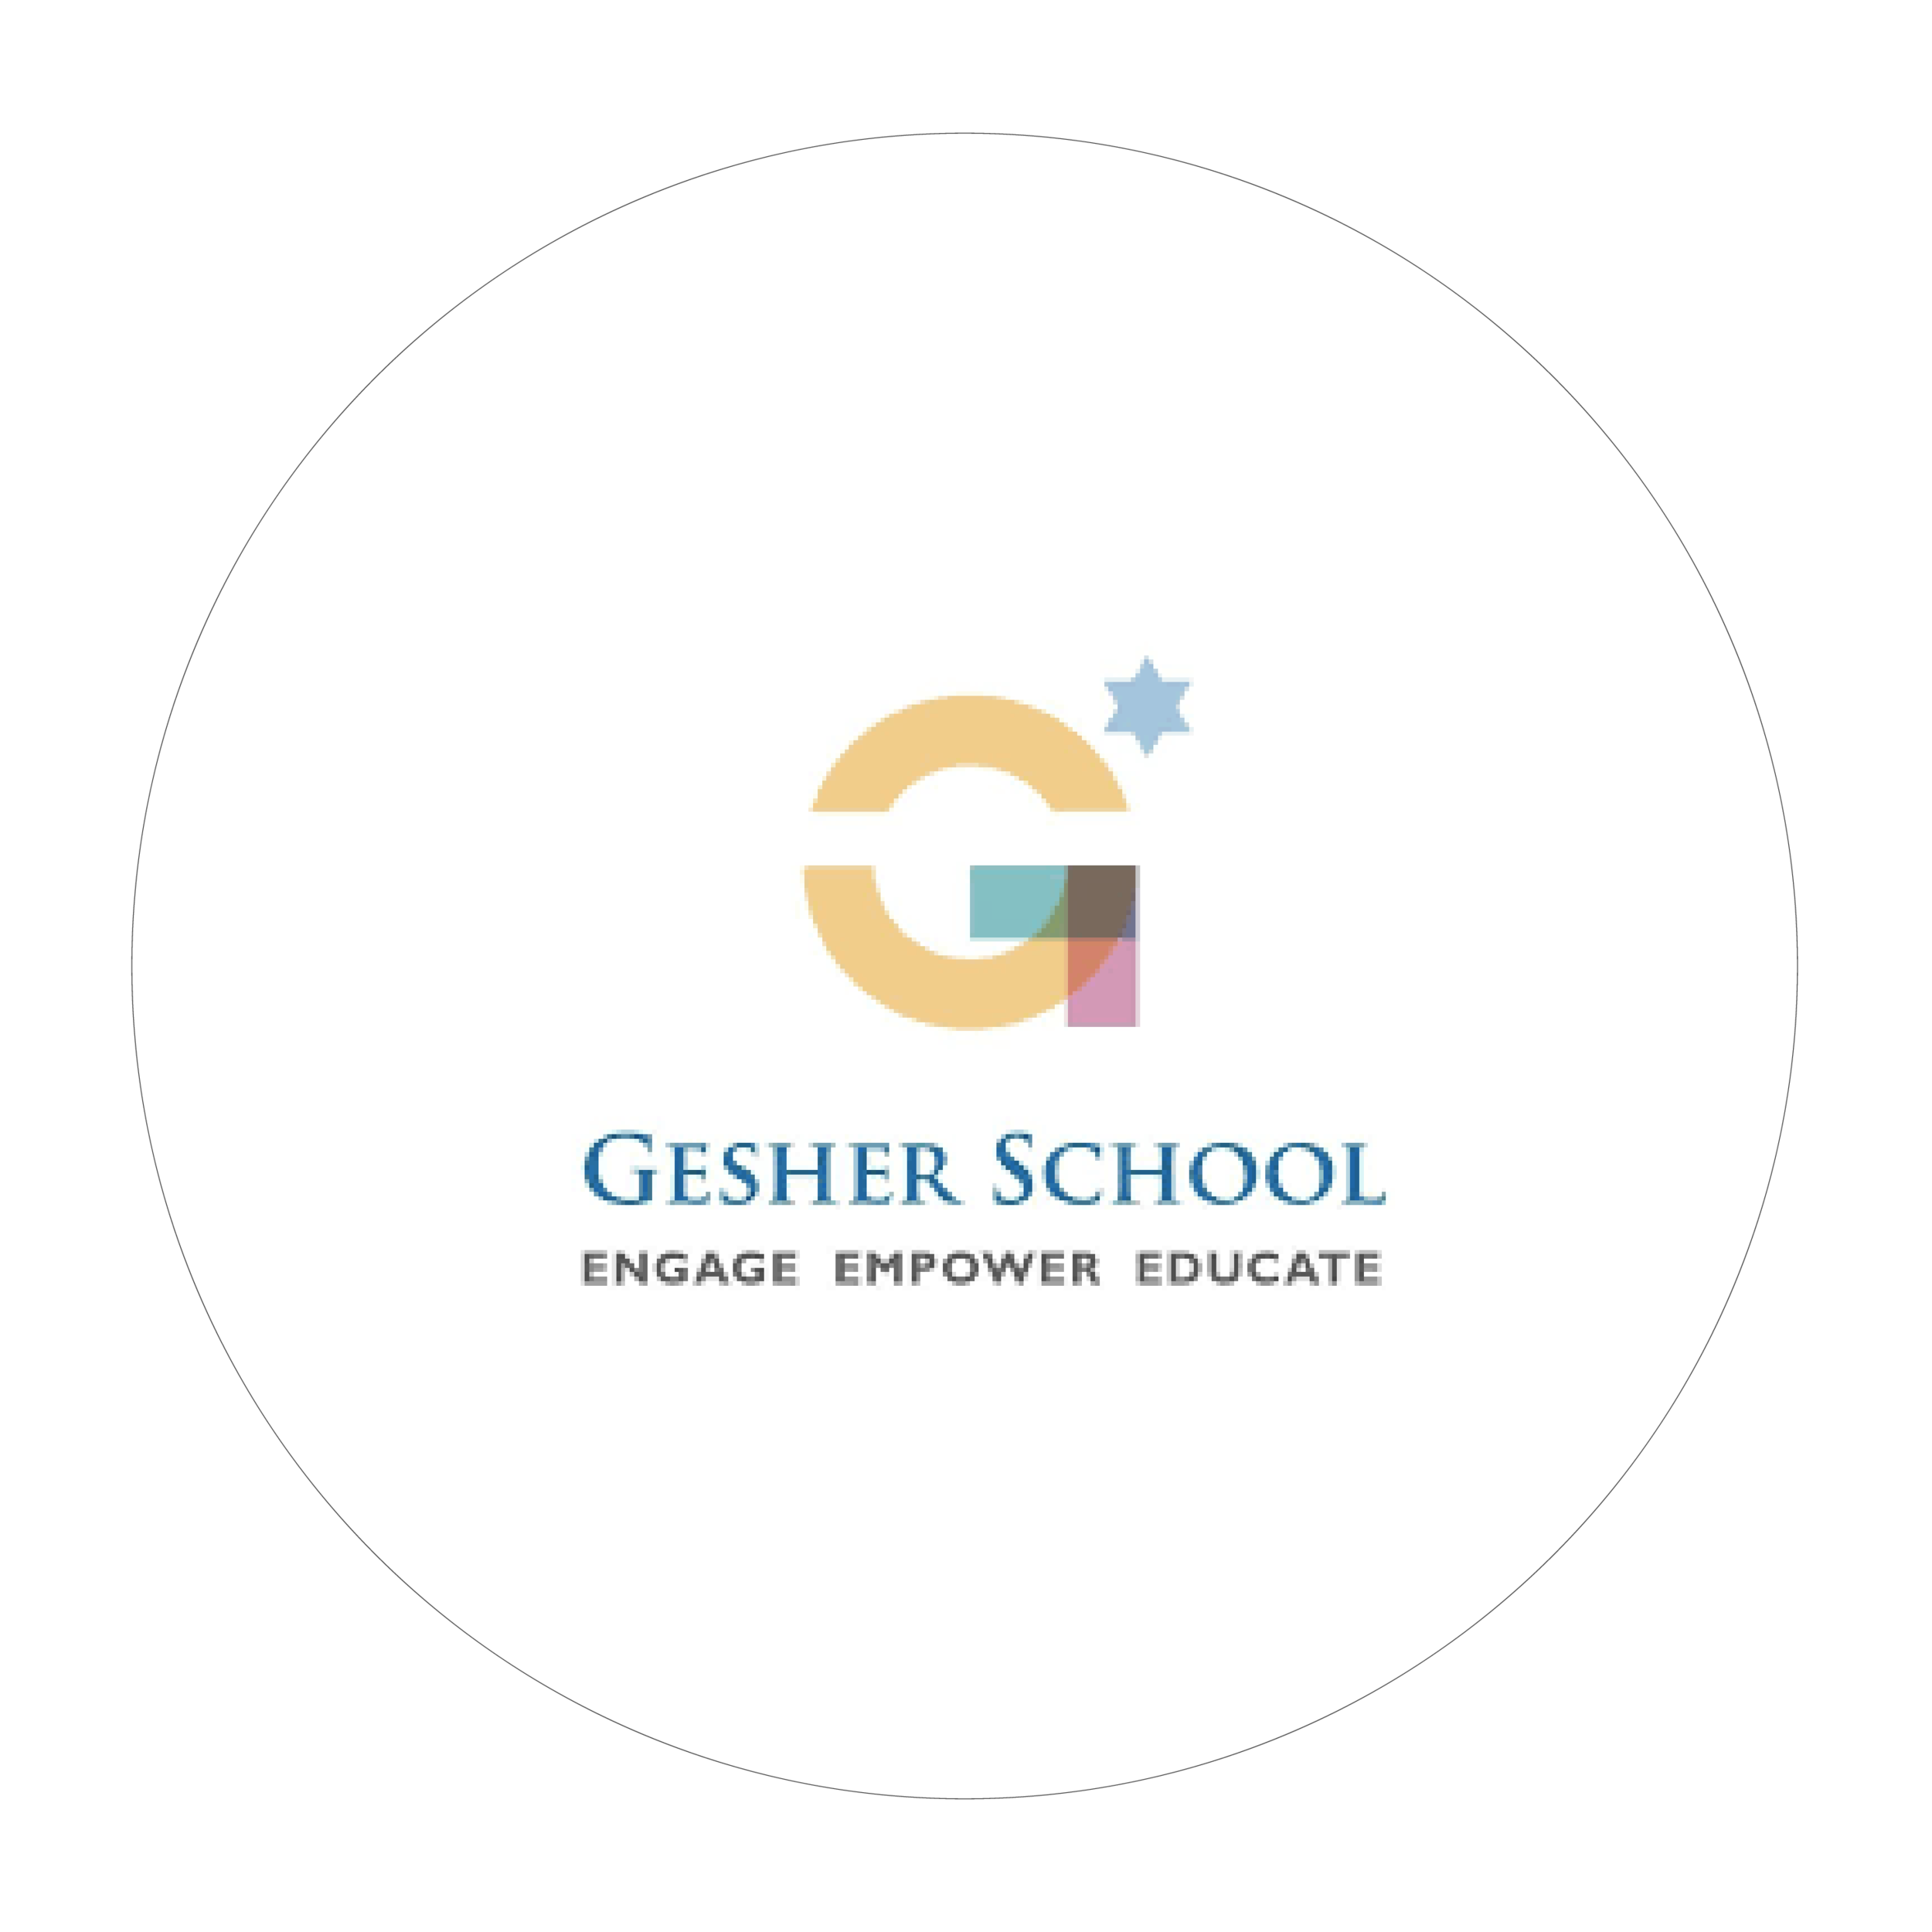 Gesher School